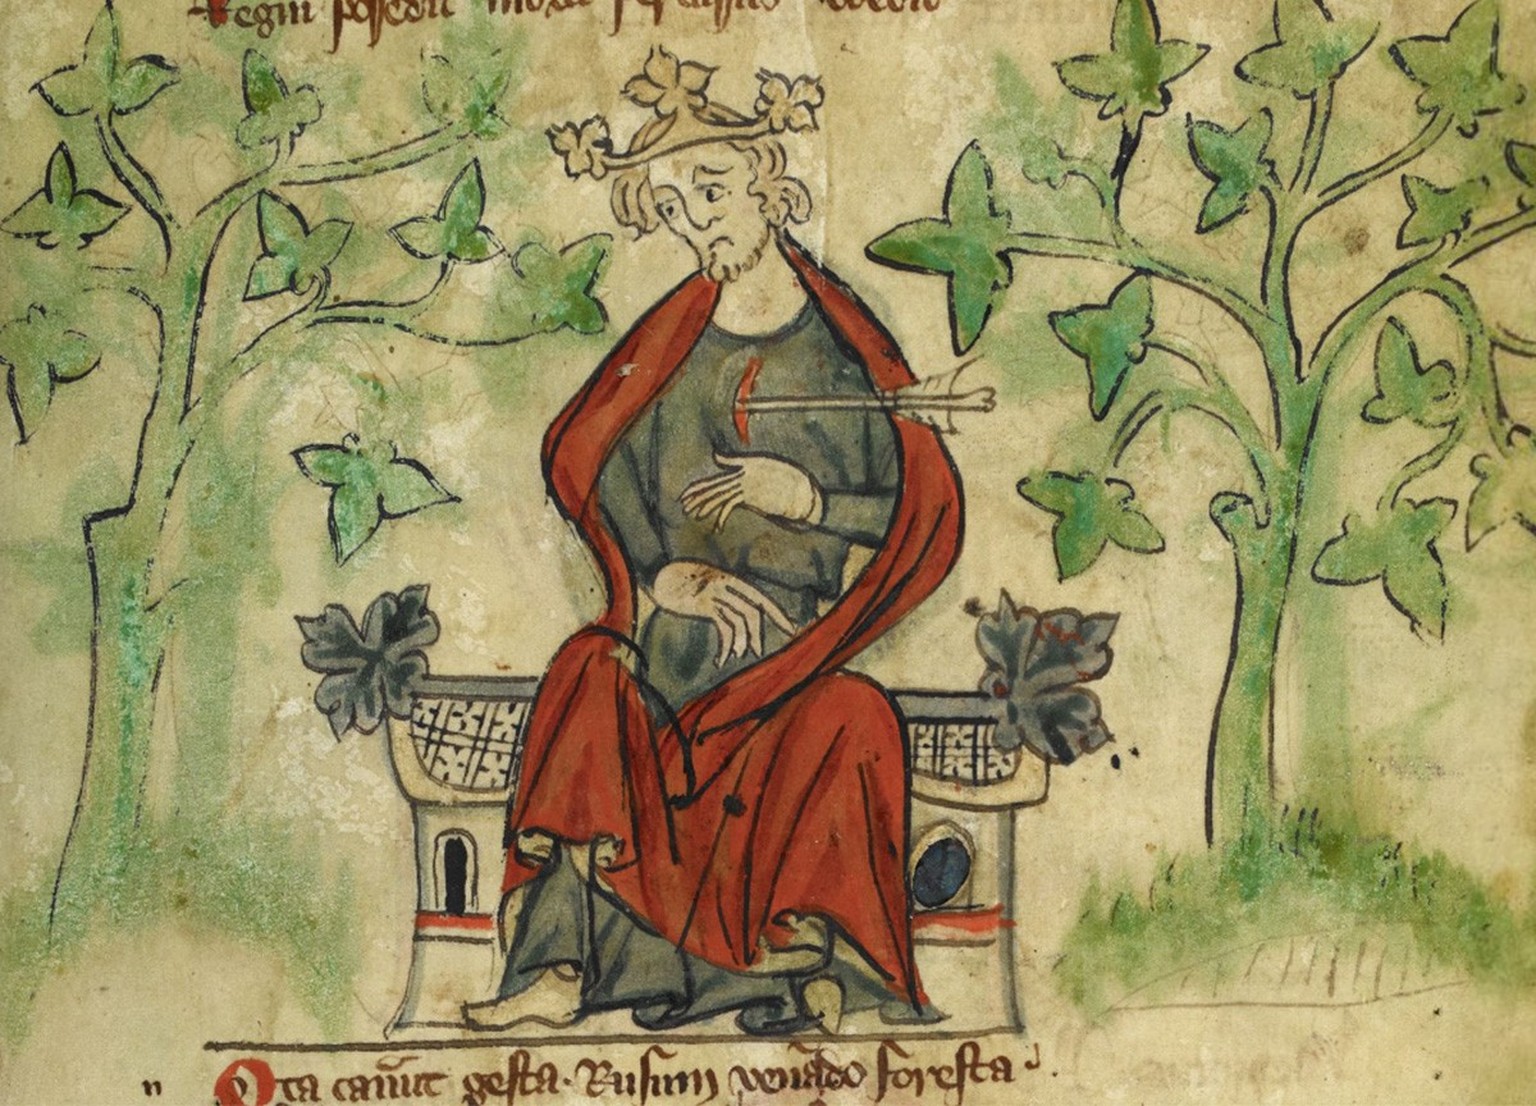 Guillaume II est touché mortellement par une flèche tirée d’une arbalète.
https://www.bl.uk/manuscripts/Viewer.aspx?ref=royal_ms_20_a_ii_fs001r